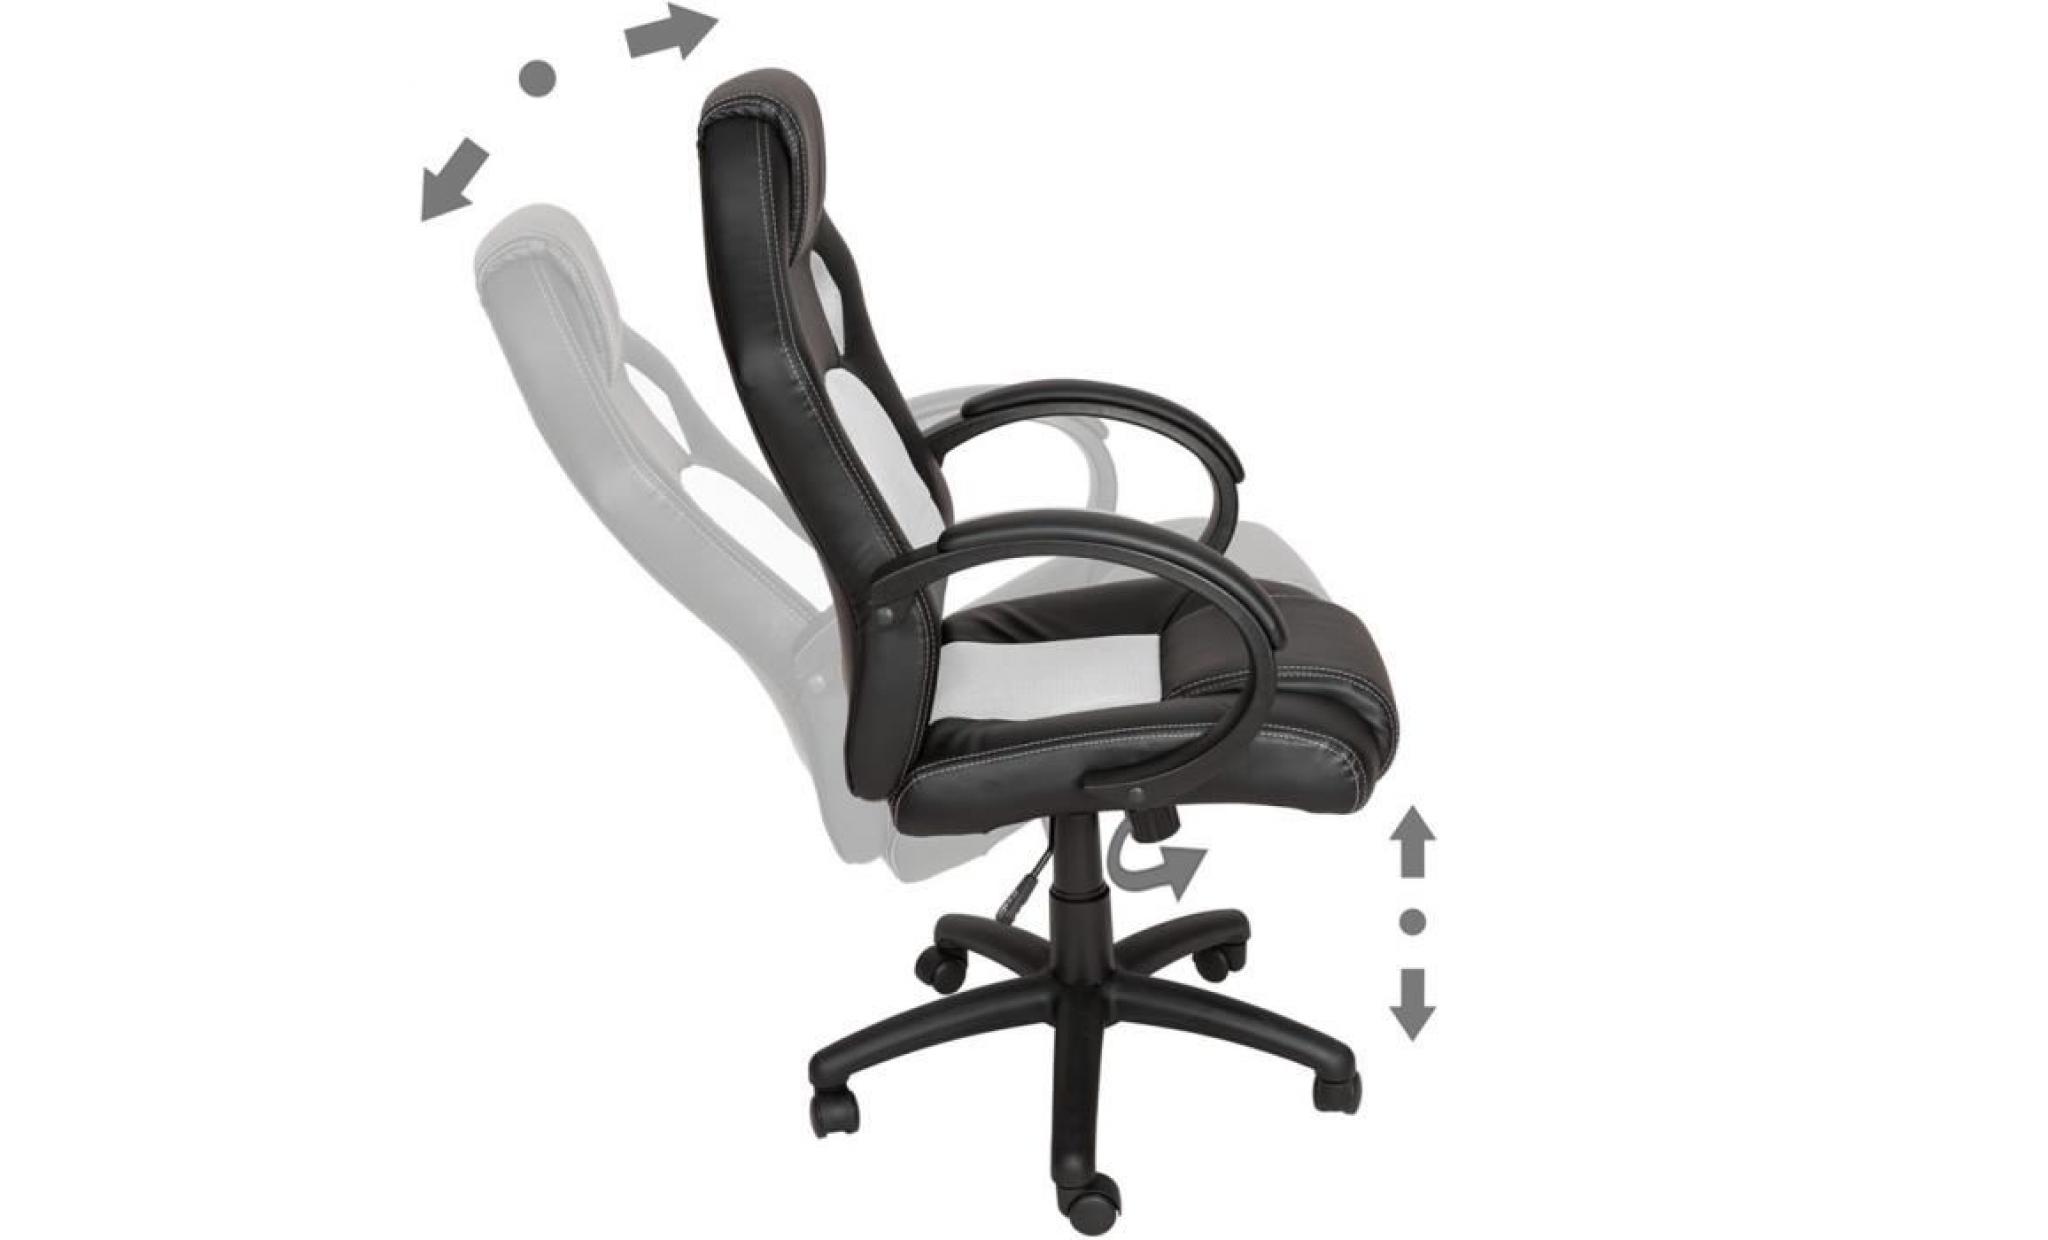 tectake chaise de bureau fauteuil de bureau racing sport noir / blanc rembourrage Épais   hauteur réglable   pivotante pas cher